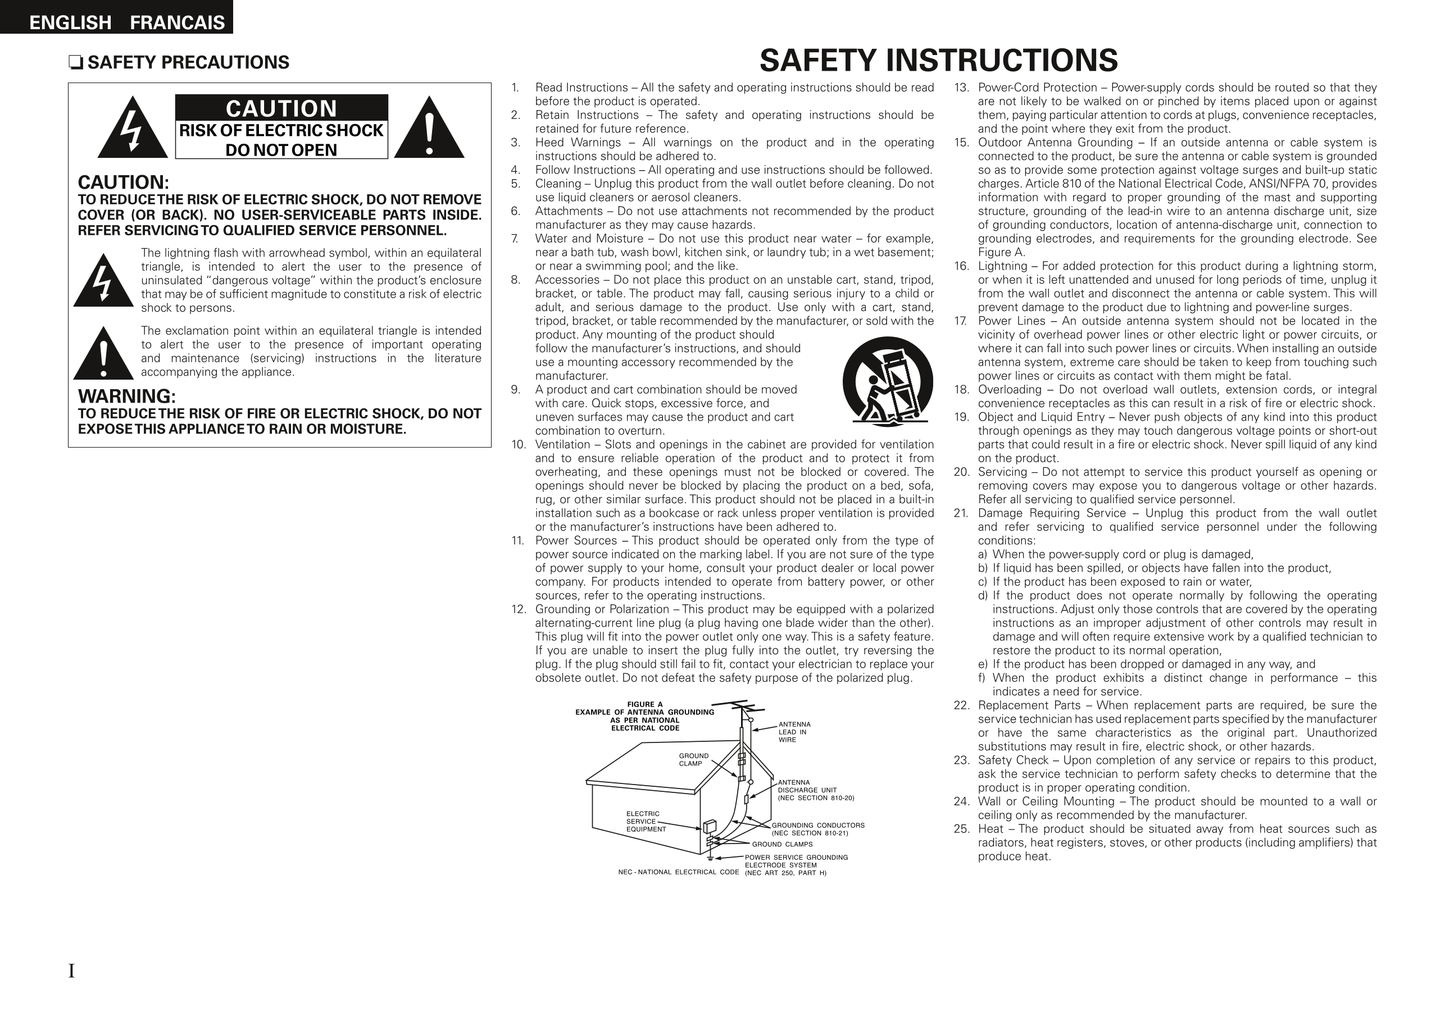 Denon AVR-1508 AV Receiver Owner's/ User Manual (Pages: 62)